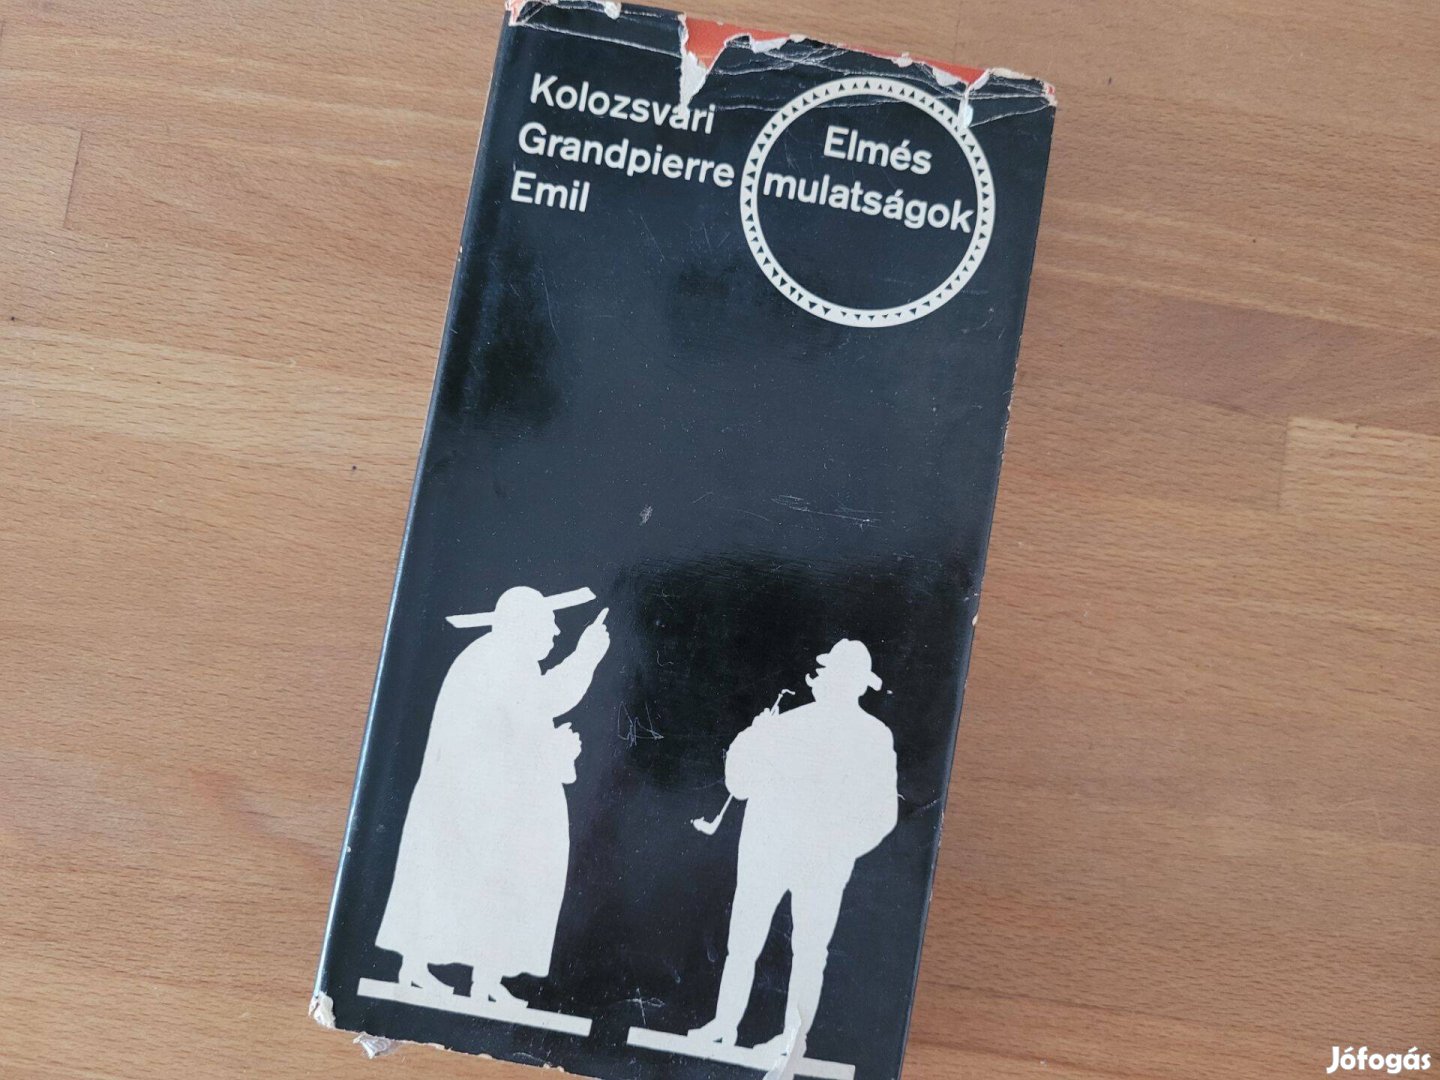 Kolozsvári Grandpierre Emil - Elmés mulatságok (Gondolat Kiadó,1969)